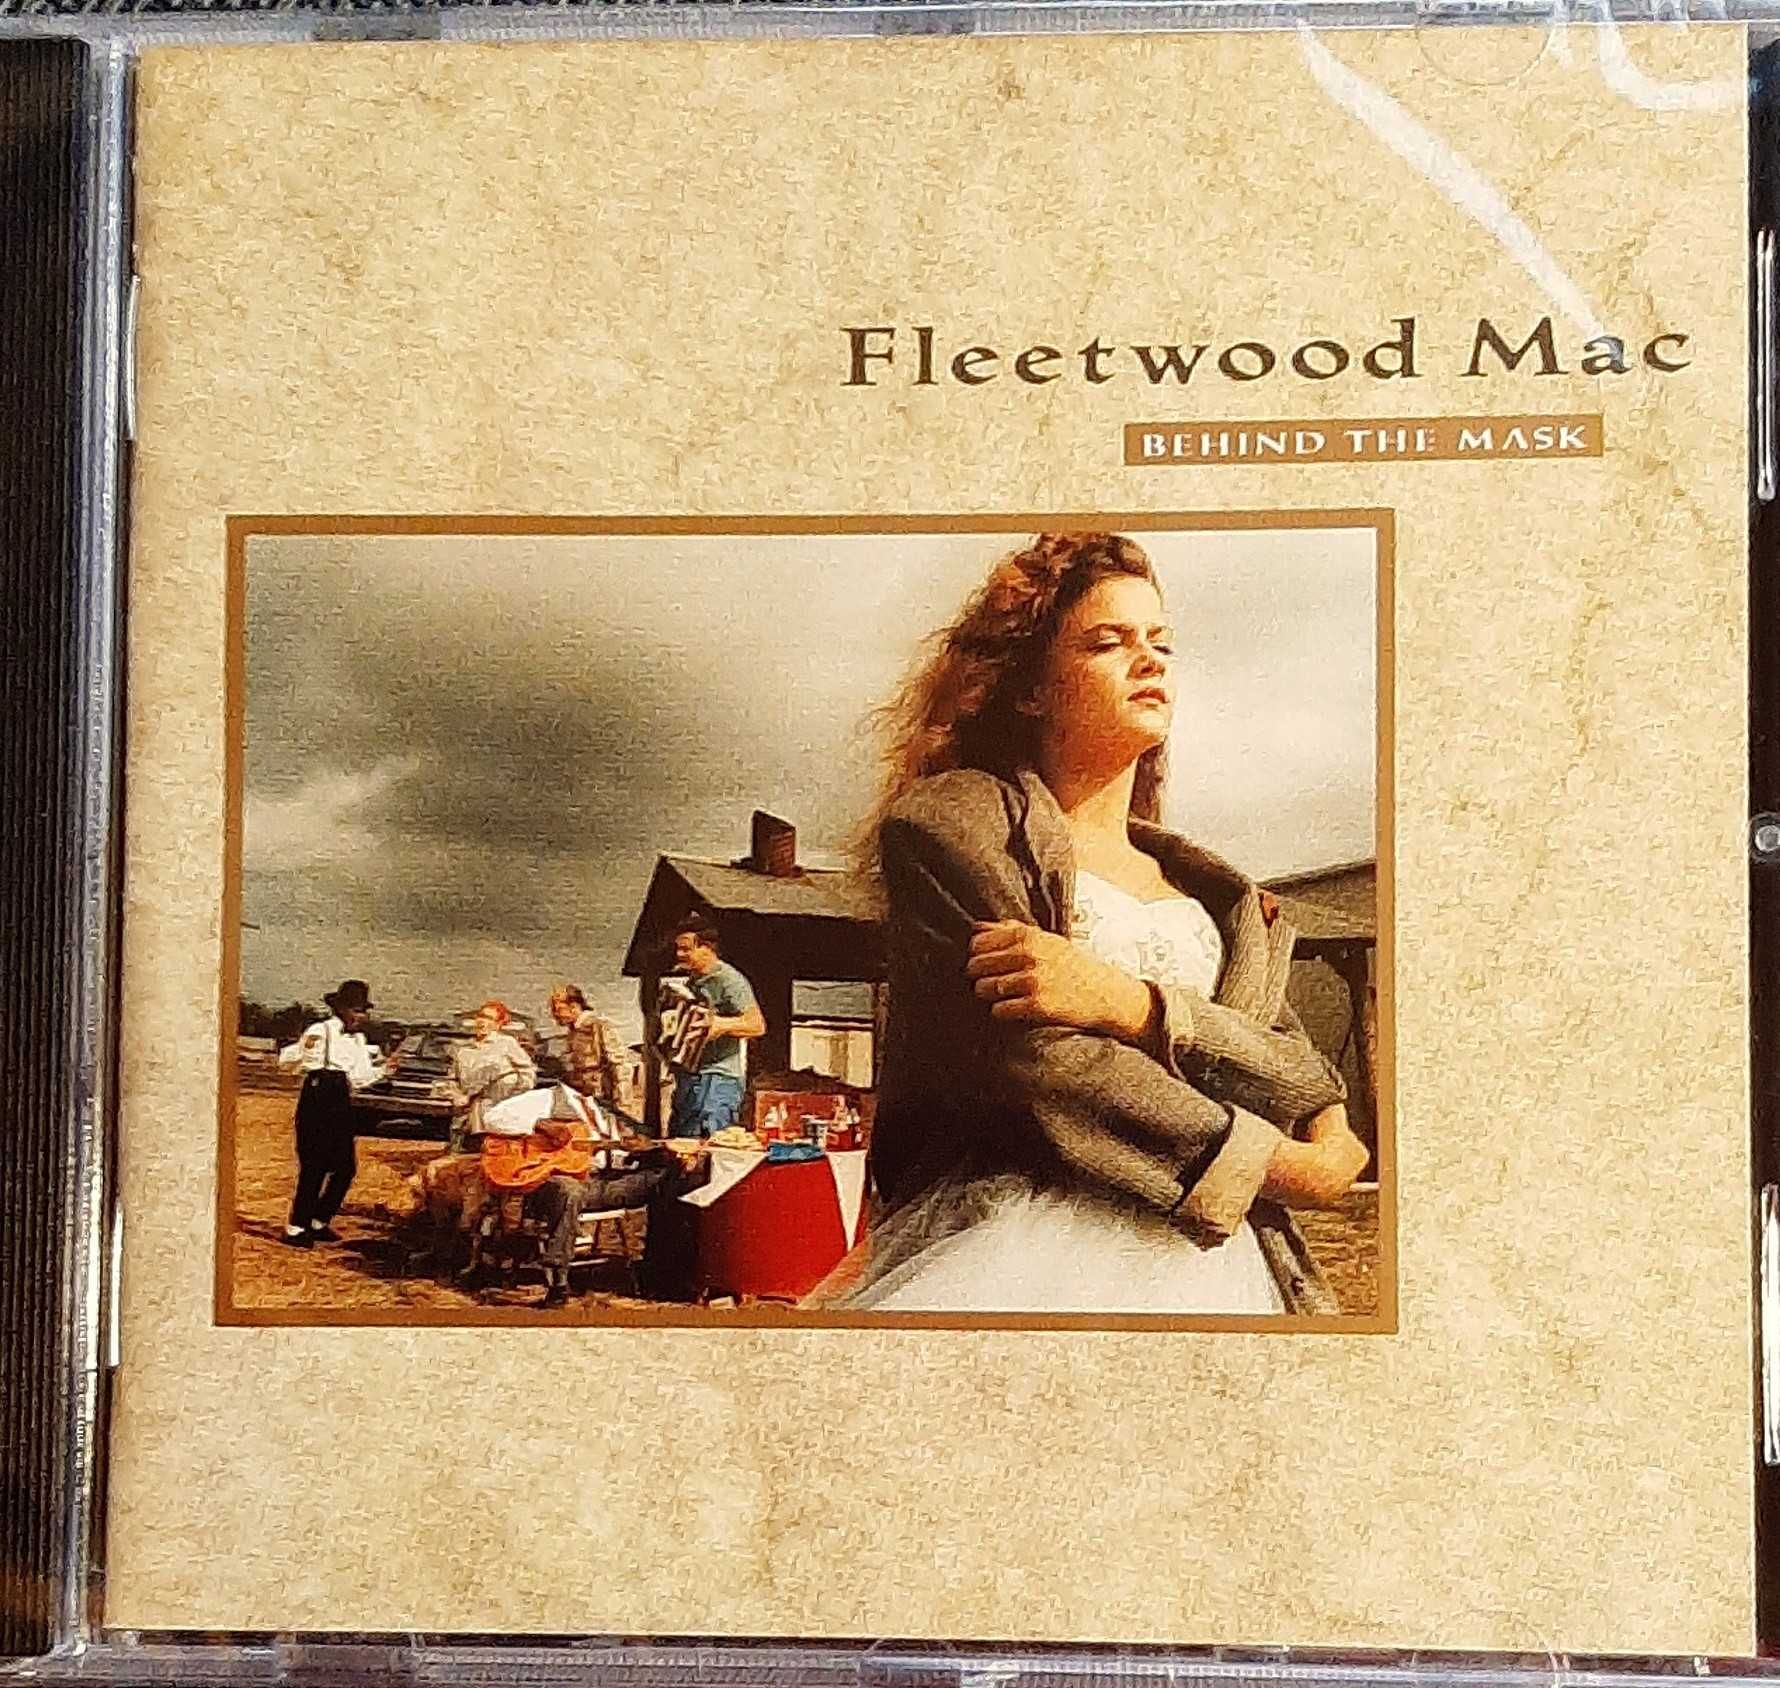 Polecam Zestaw 8 Albumów na CD Super Grupy FLEETWOOD MAC